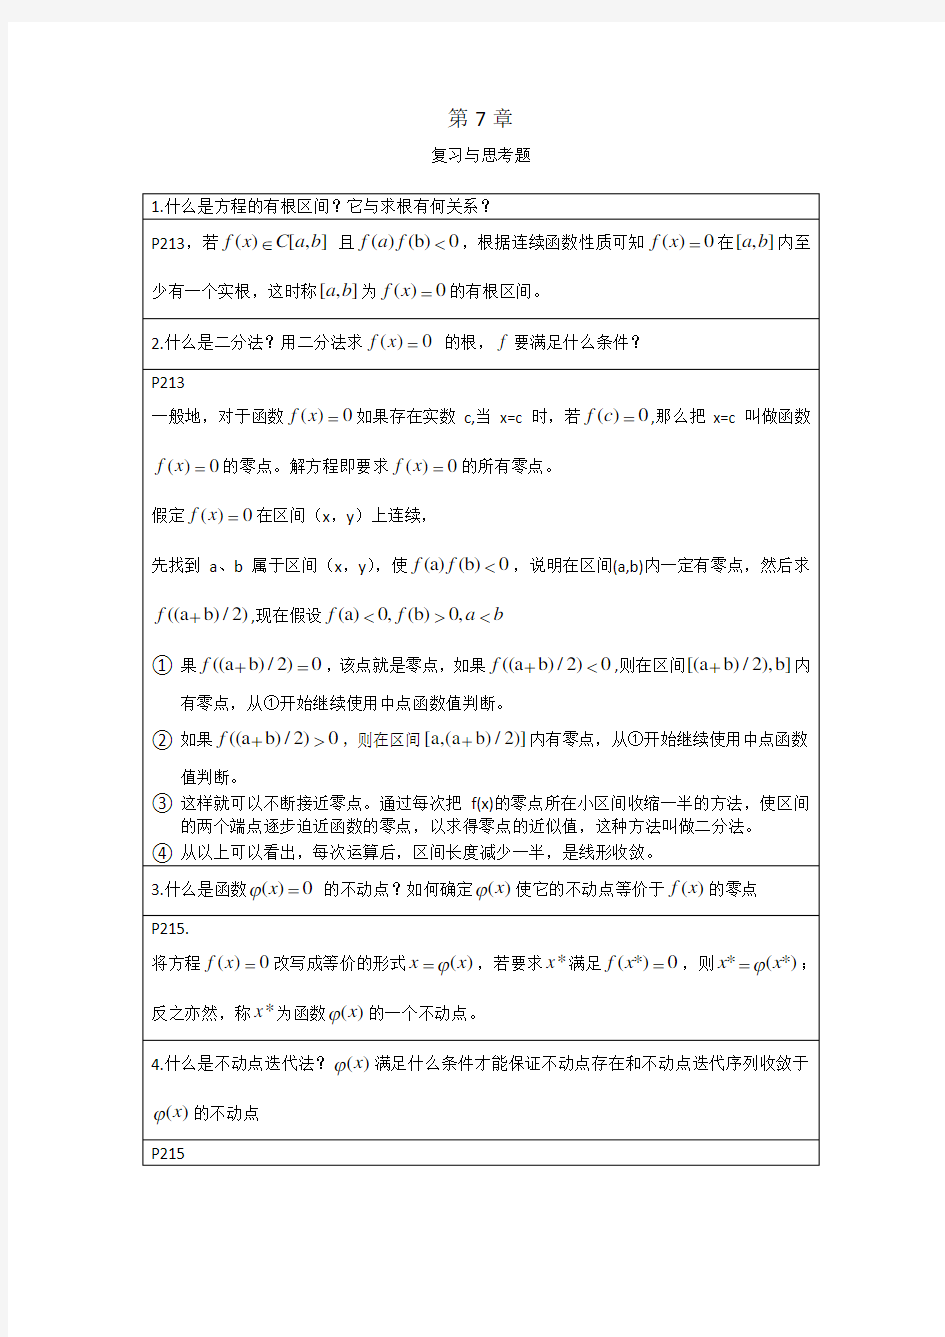 李庆扬-数值分析第五版第7章习题答案(20130824)